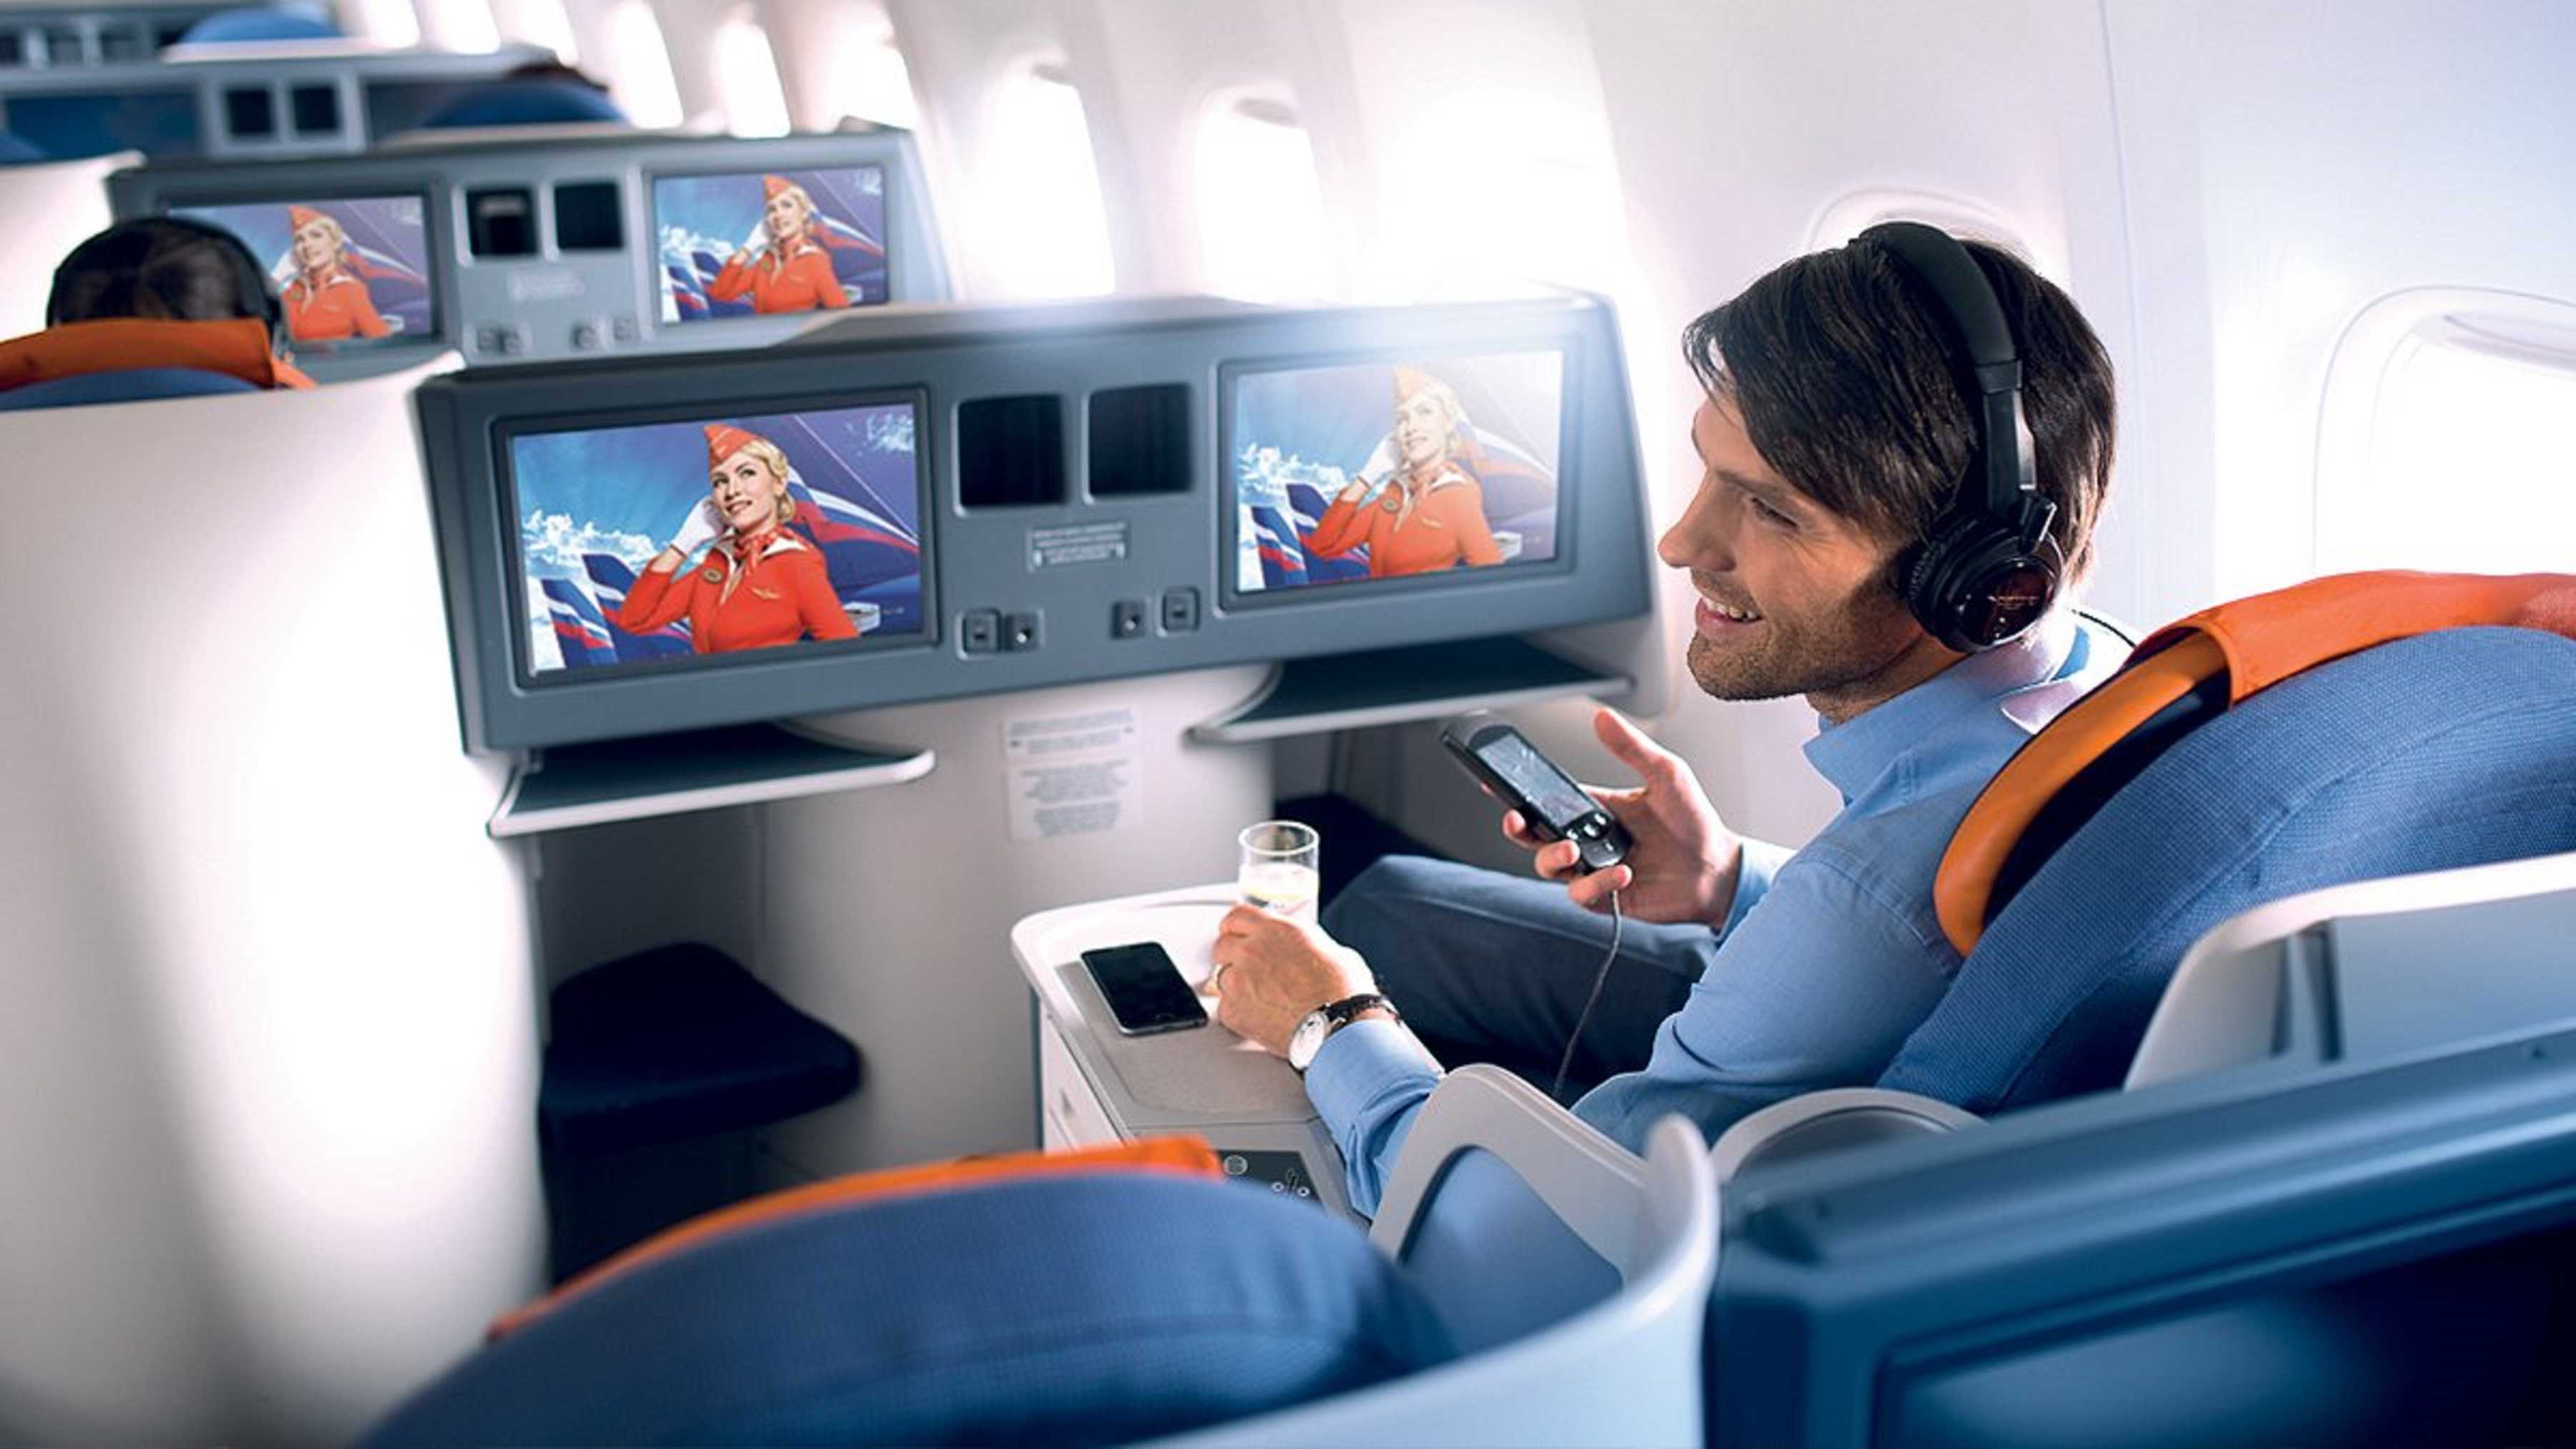 Товары в самолете россия. Мультимедиа в самолете. Развлечения в самолете. Экран в самолете. Аэрофлот пассажир бизнес класса.